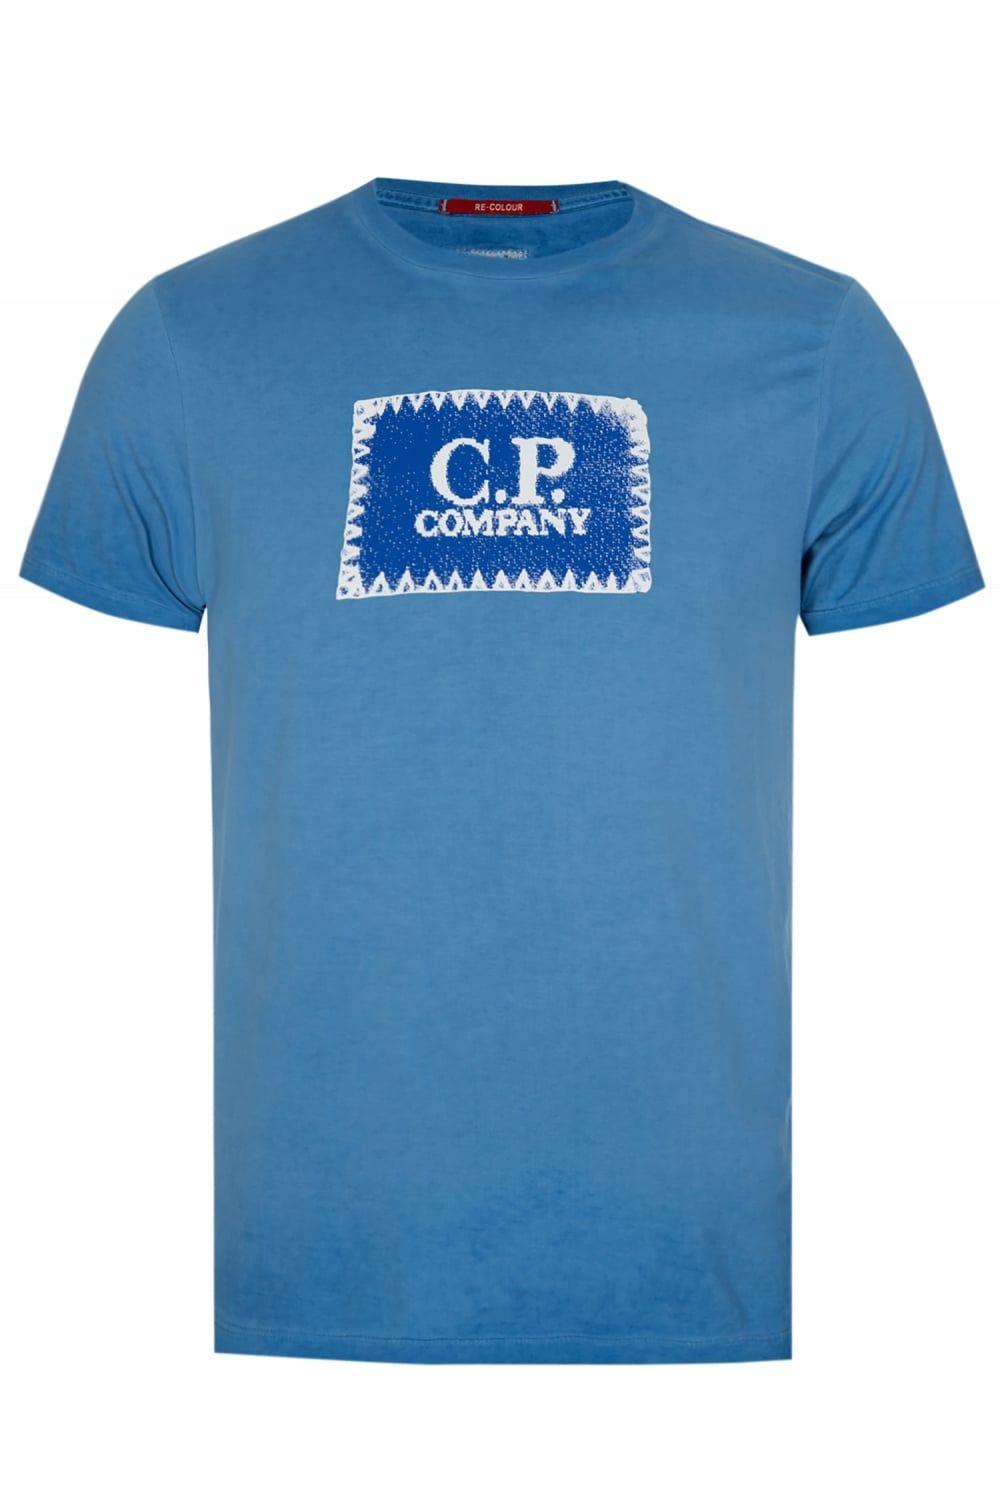 Company with Green Box Logo - C.P Company Box Logo T-Shirt Blue